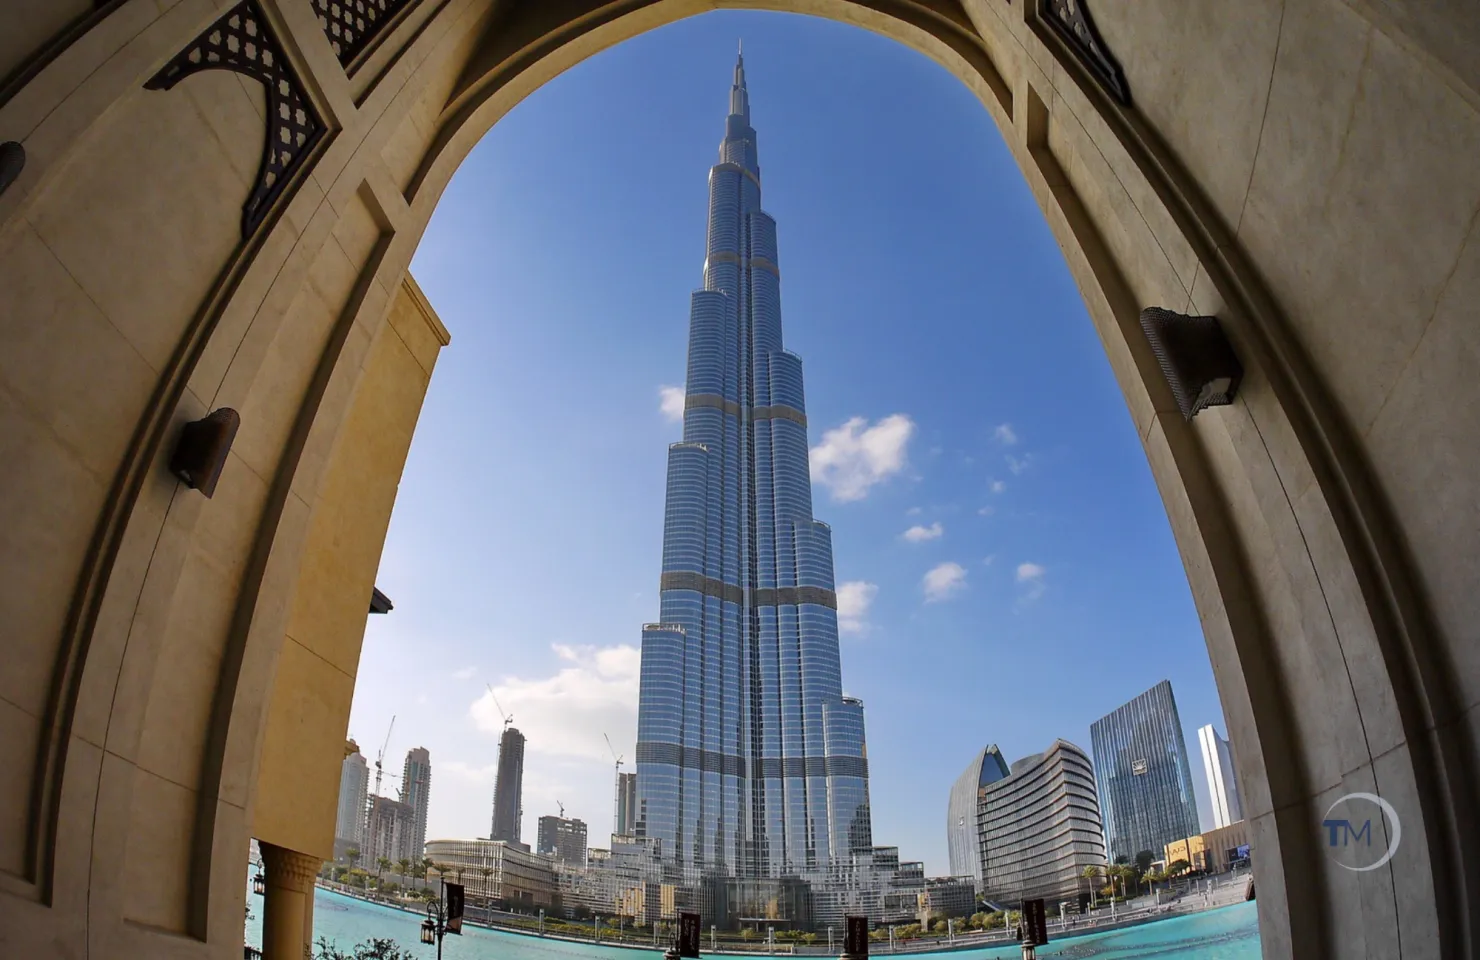 Burj Khalifa Dubai